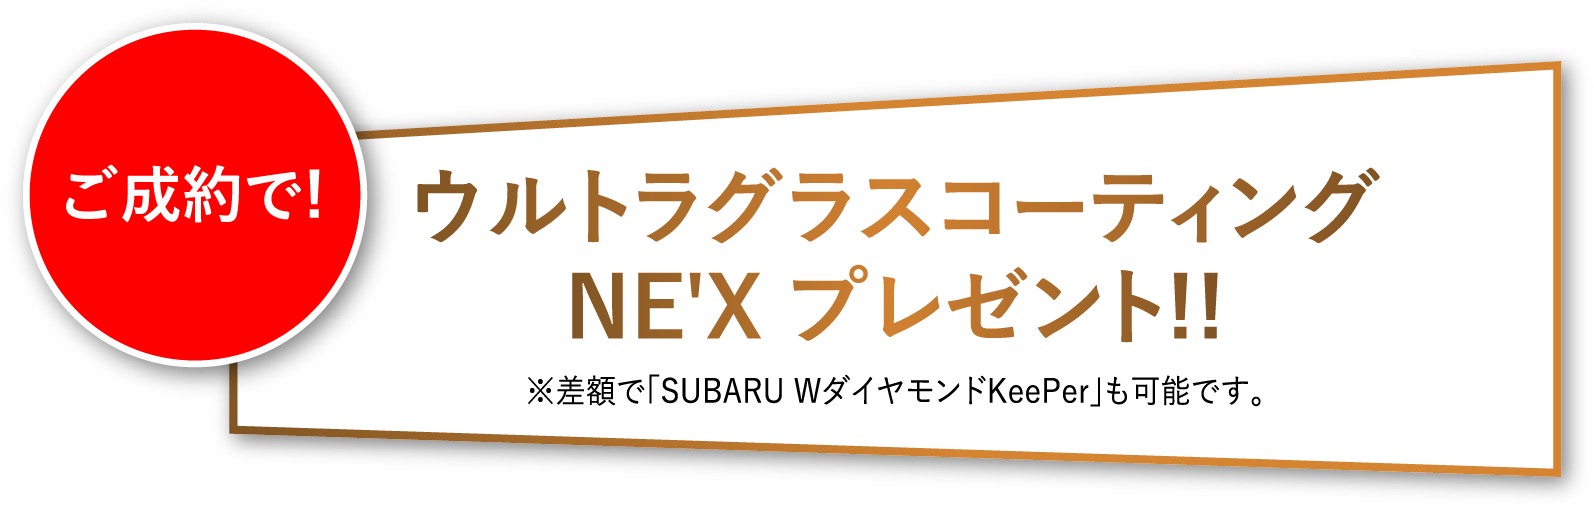 ご成約で!ウルトラグラスコーティングNE'X プレゼント!!※差額で「SUBARU WダイヤモンドKeePer」も可能です。